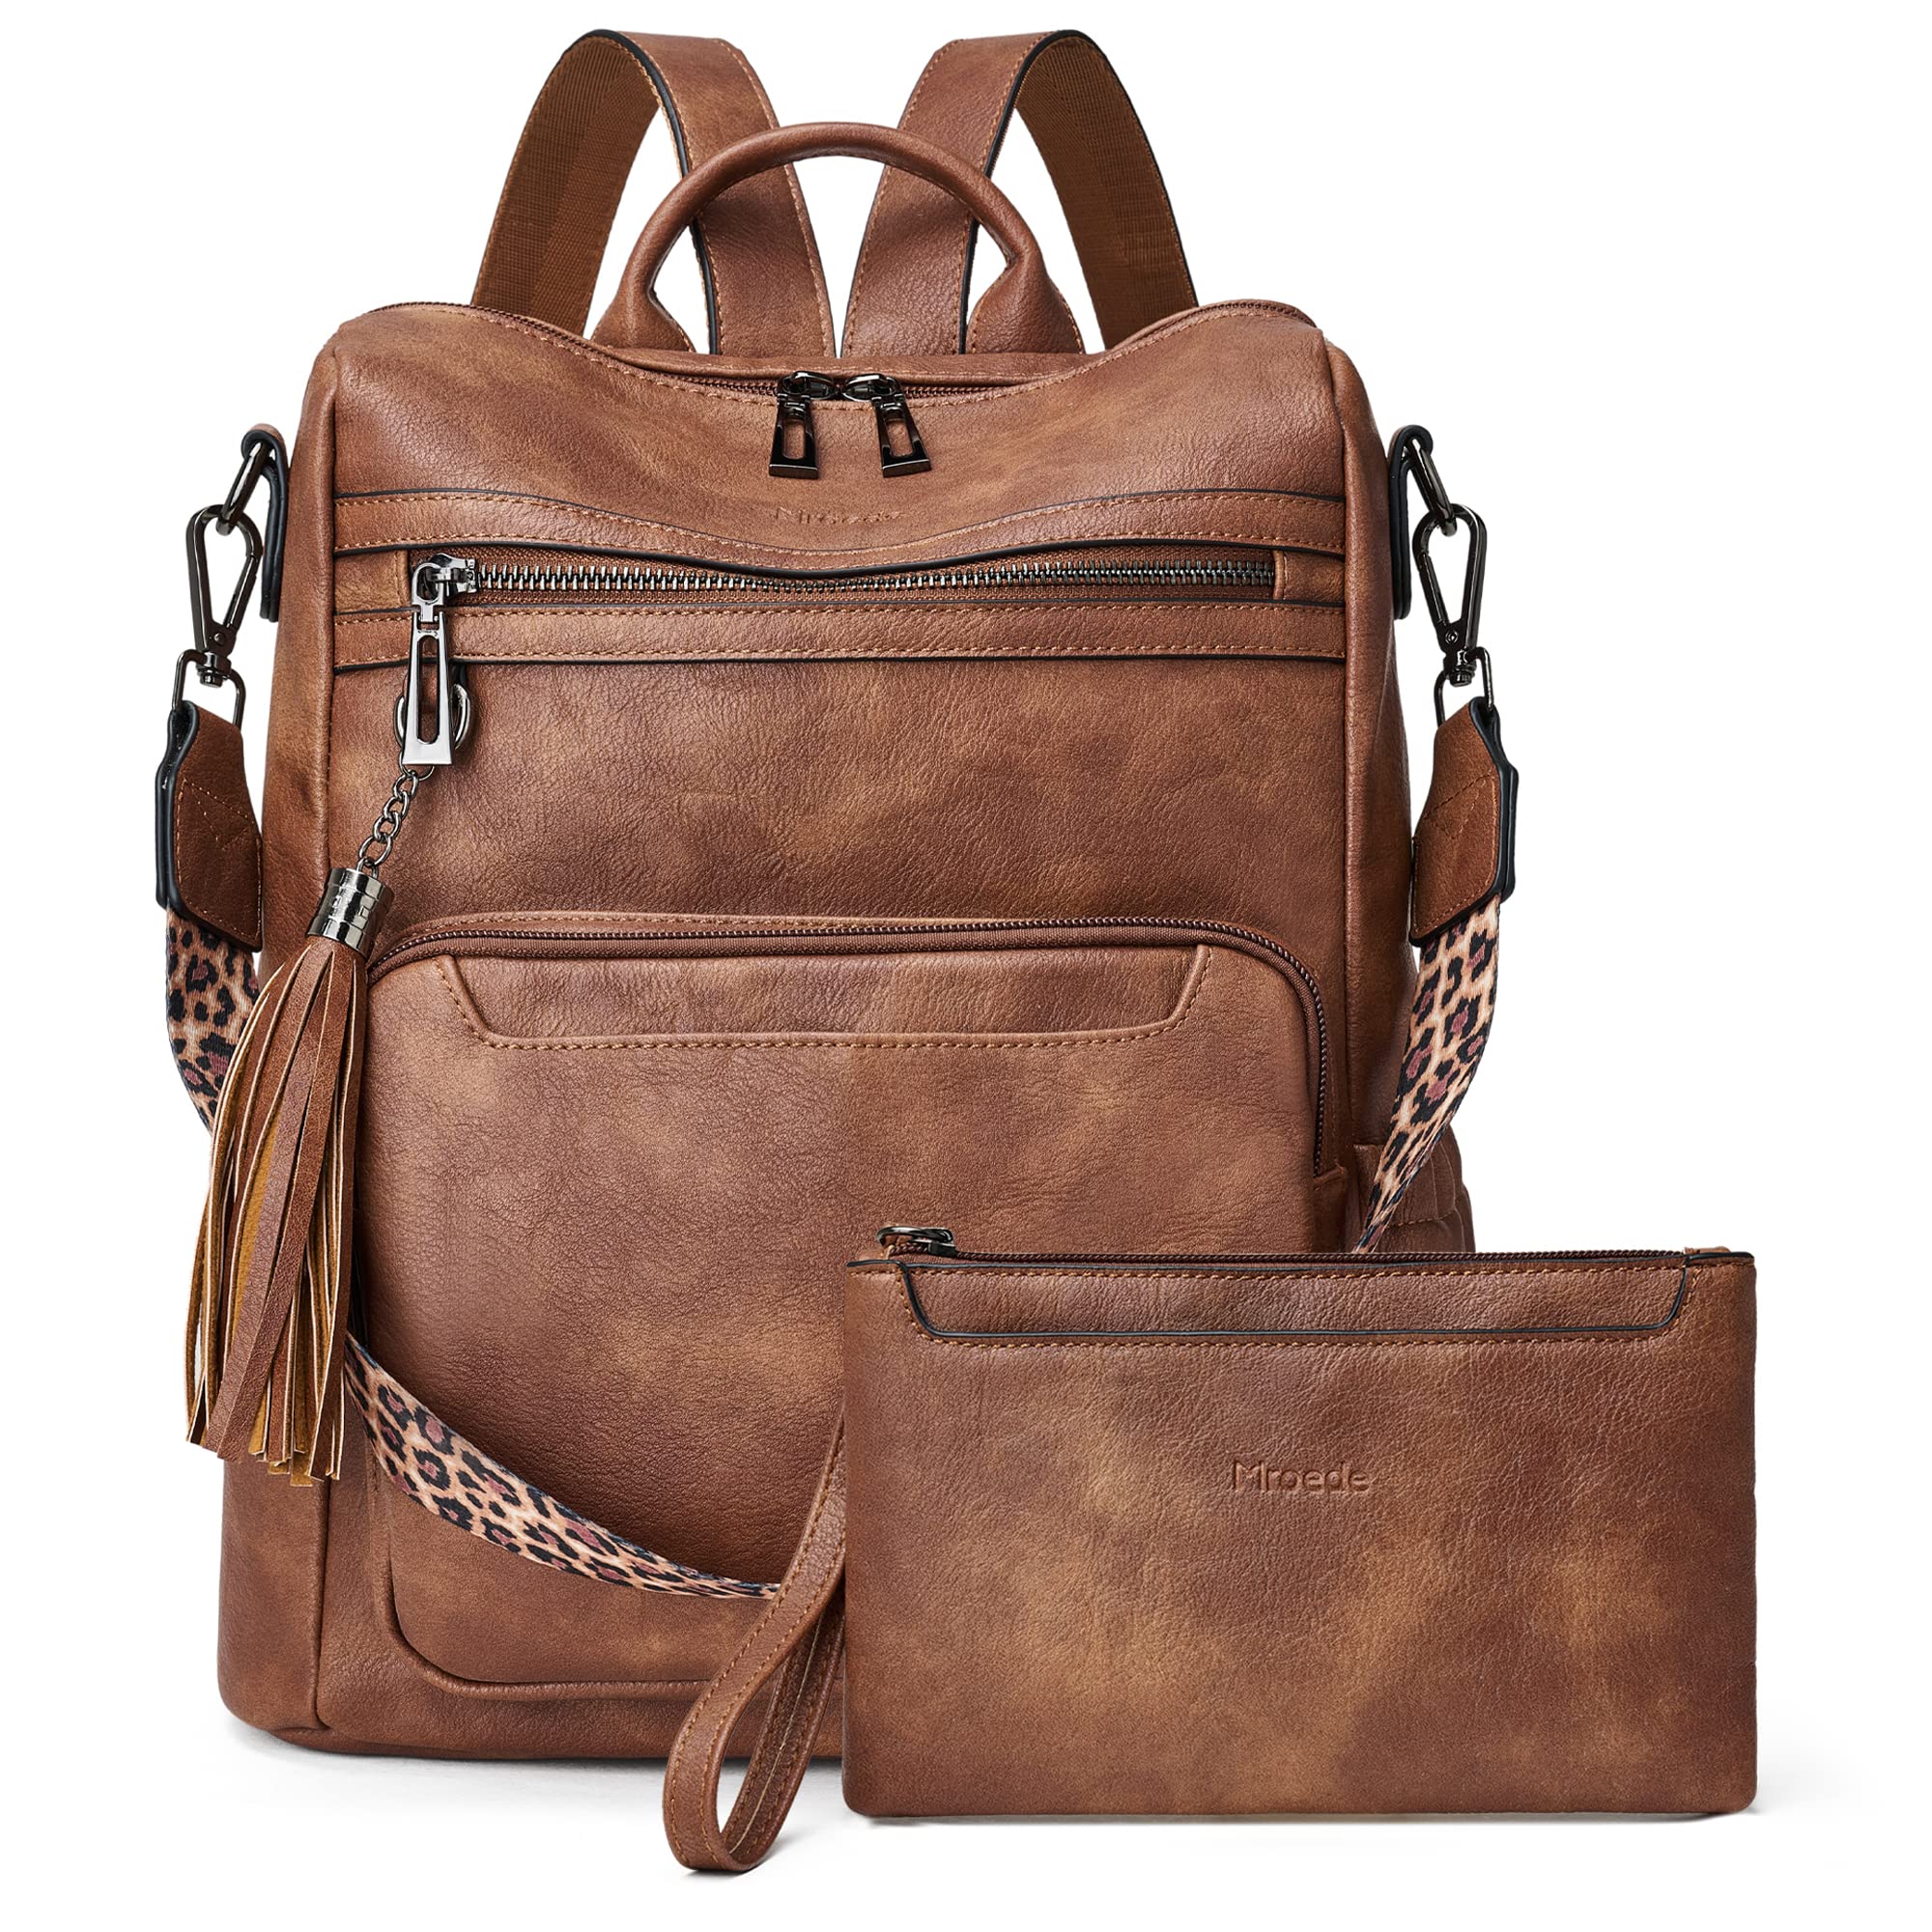 送料無料Mroede Leather Backpack Purse for Women Fashion Designer Ladies Shoulder Bags Travel Backpack並行輸入品